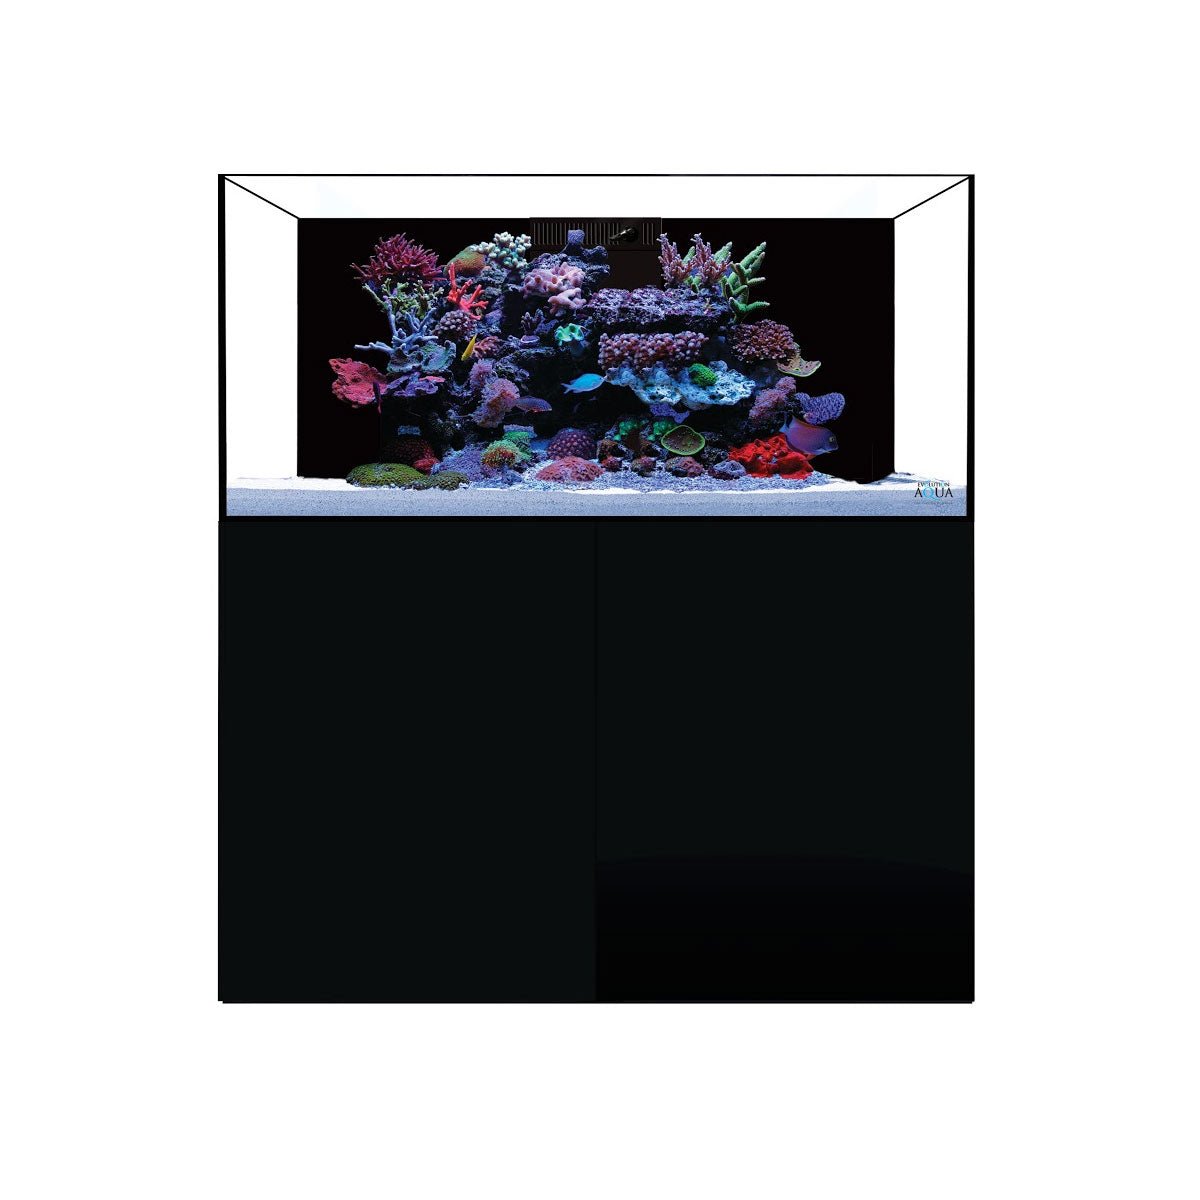 D-D Aqua-Pro Reef 1200 - Gloss Anthracite - Wooden Cabinet - Charterhouse Aquatics